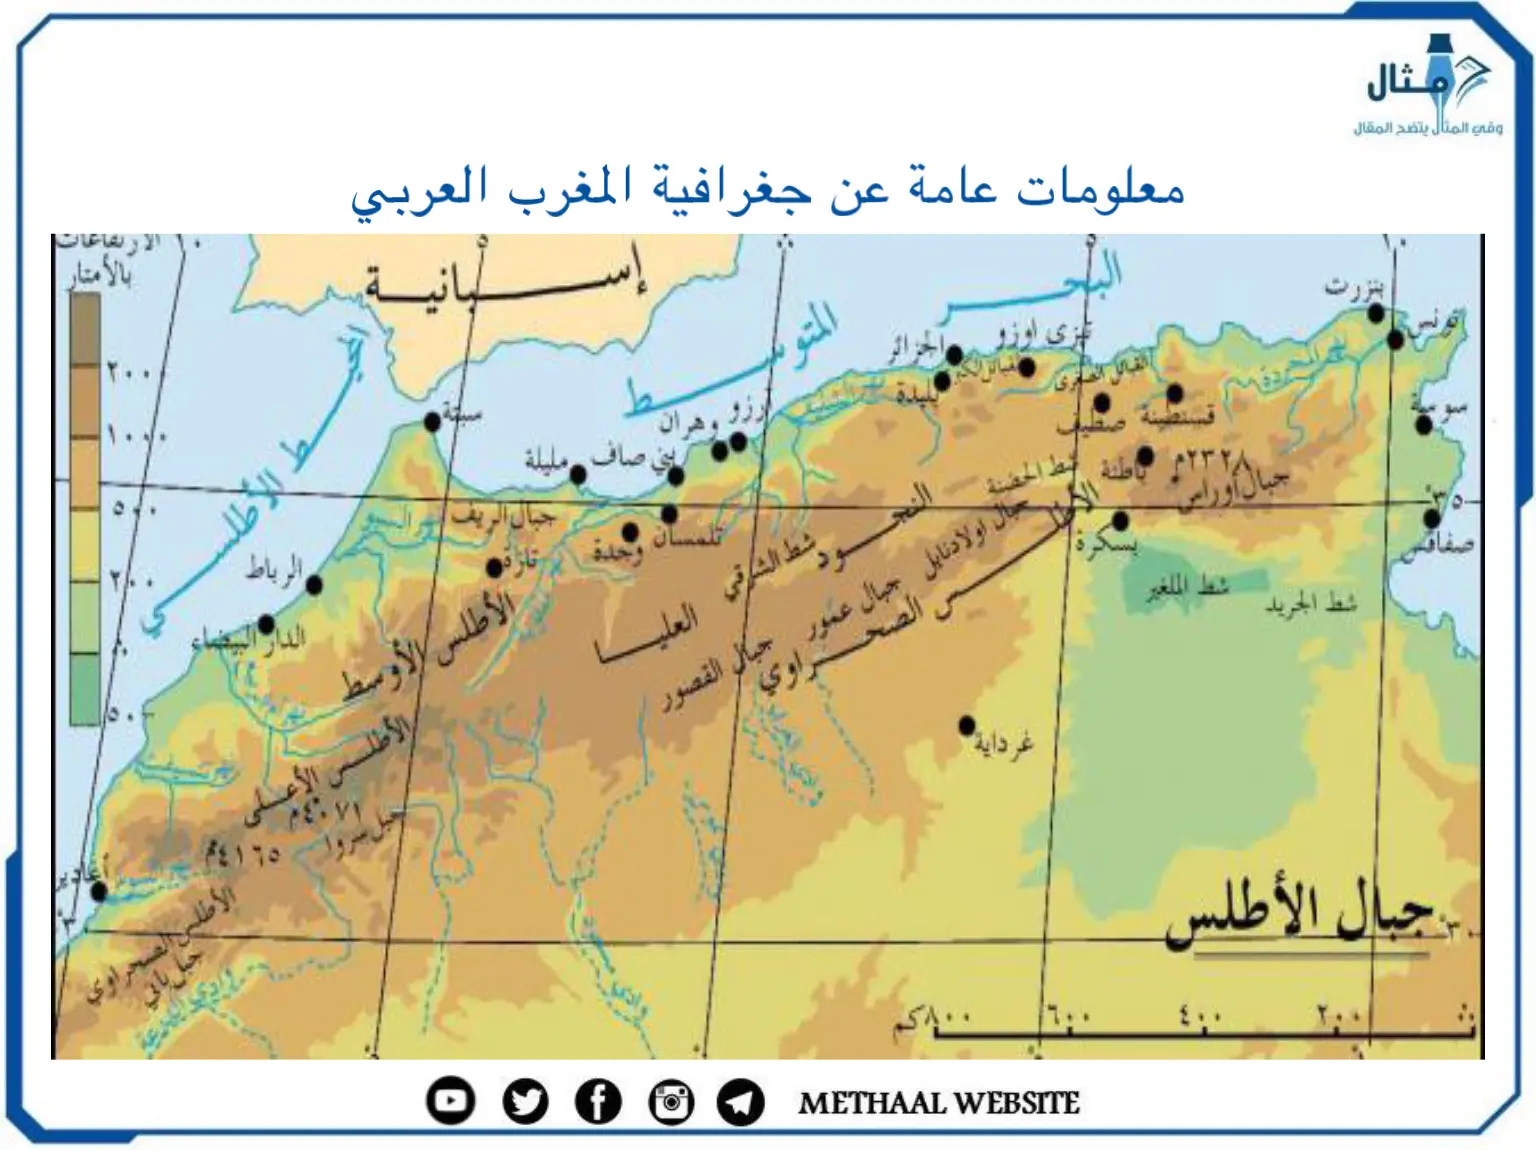 معلومات عامة عن جغرافية المغرب العربي